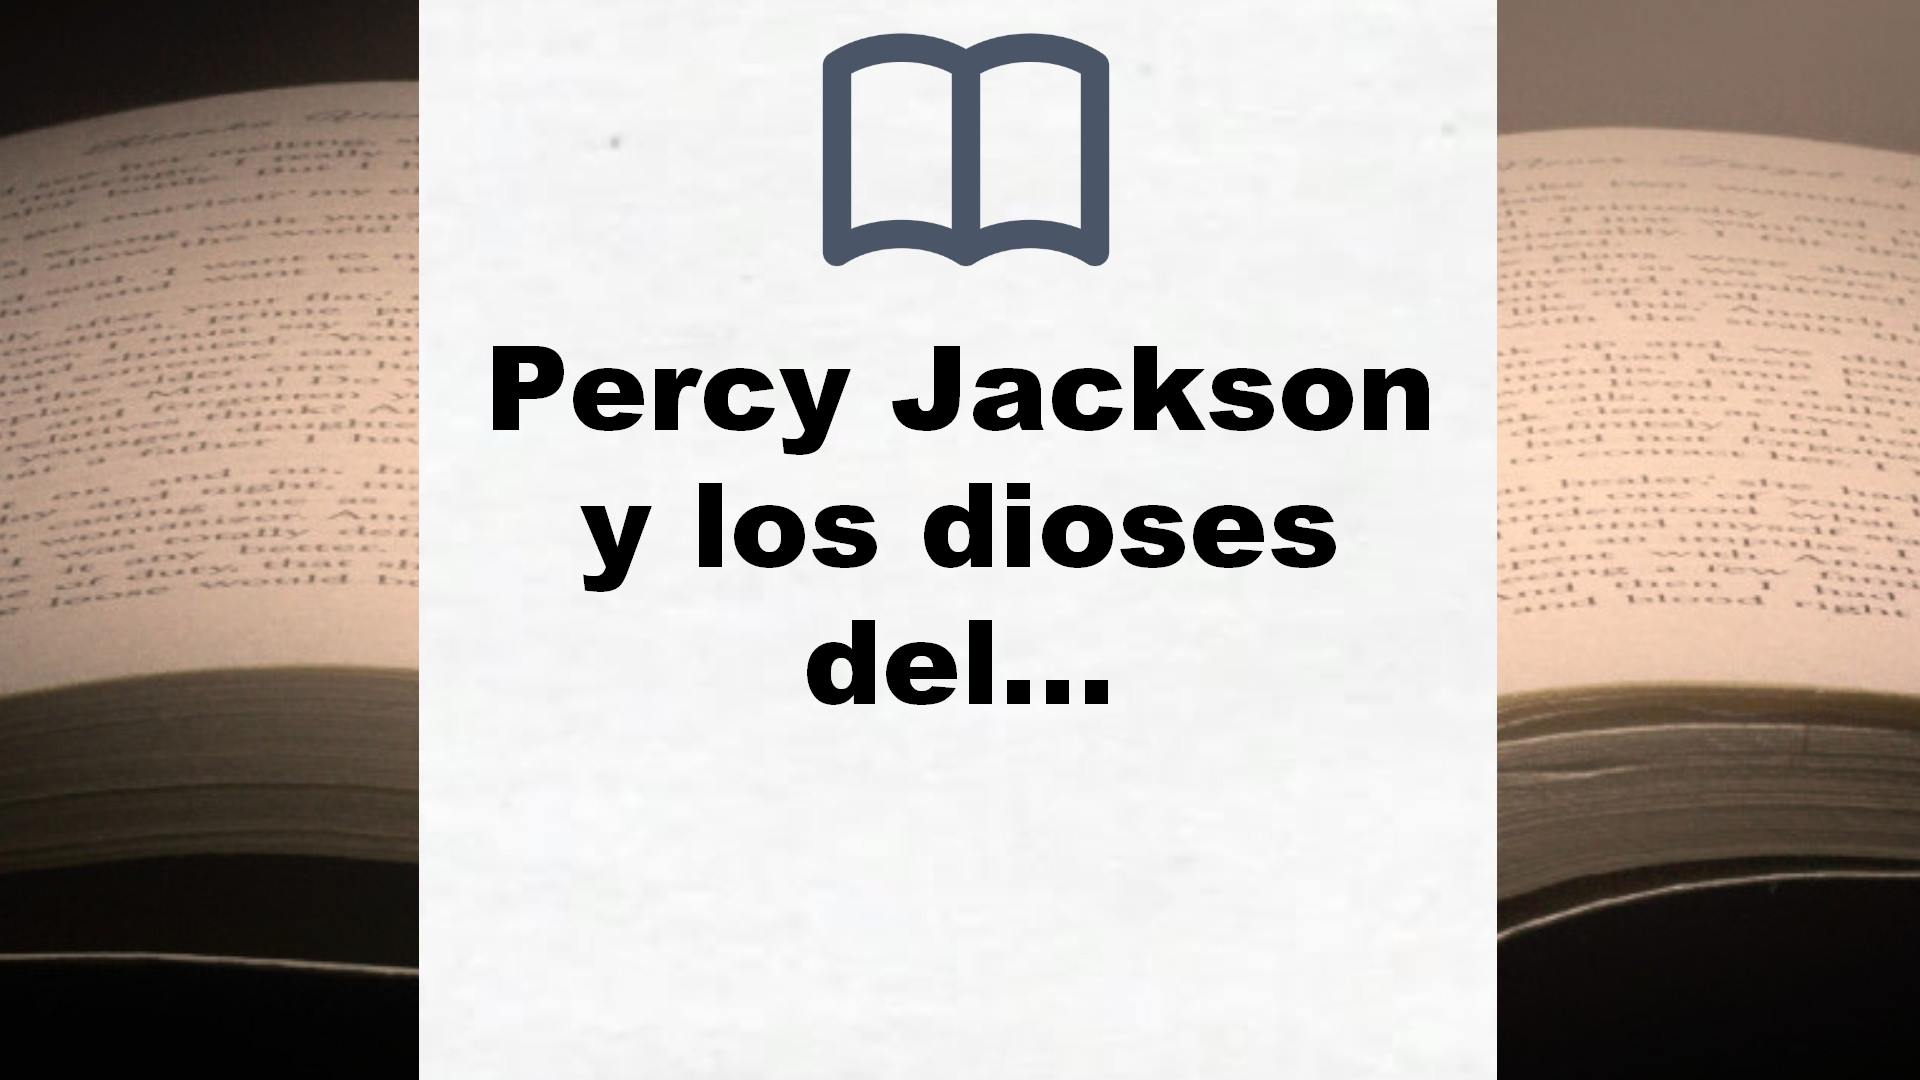 Percy Jackson y los dioses del Olimpo – La serie completa: (pack con: El ladrón del rayo | El mar de los monstruos | La maldición del Titán | La … héroe del Olimpo) (Salamandra Bolsillo) – Reseña del libro